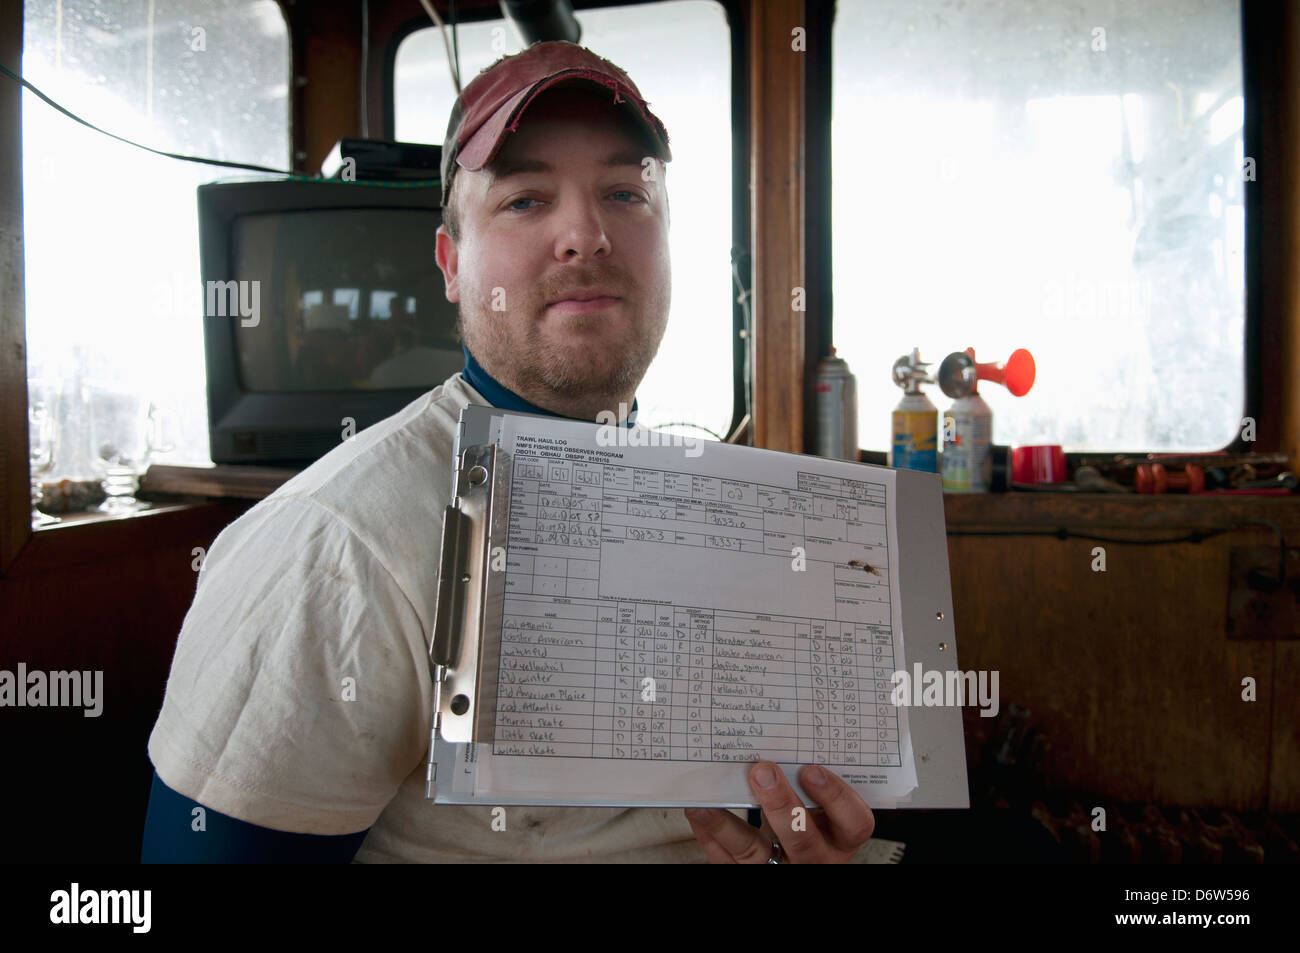 Fischerei Inspektor hält Diagramm mit Haken Details. Stellwagen Banken, New England, Vereinigte Staaten von Amerika, Nord-Atlantik Stockfoto